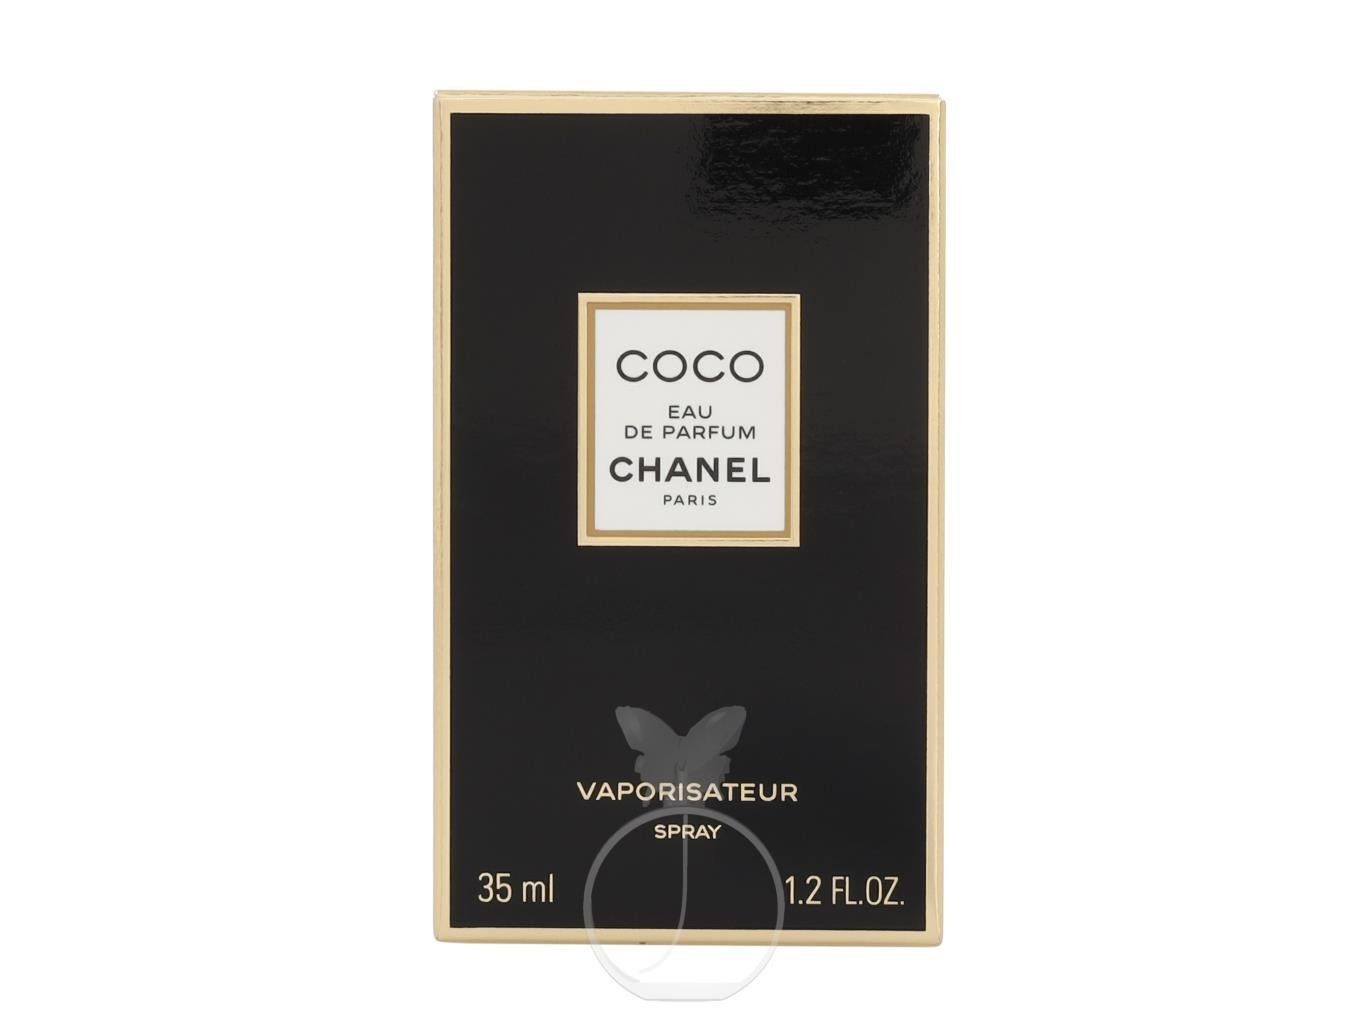 CHANEL de de Eau Eau Parfum Chanel Parfum Coco